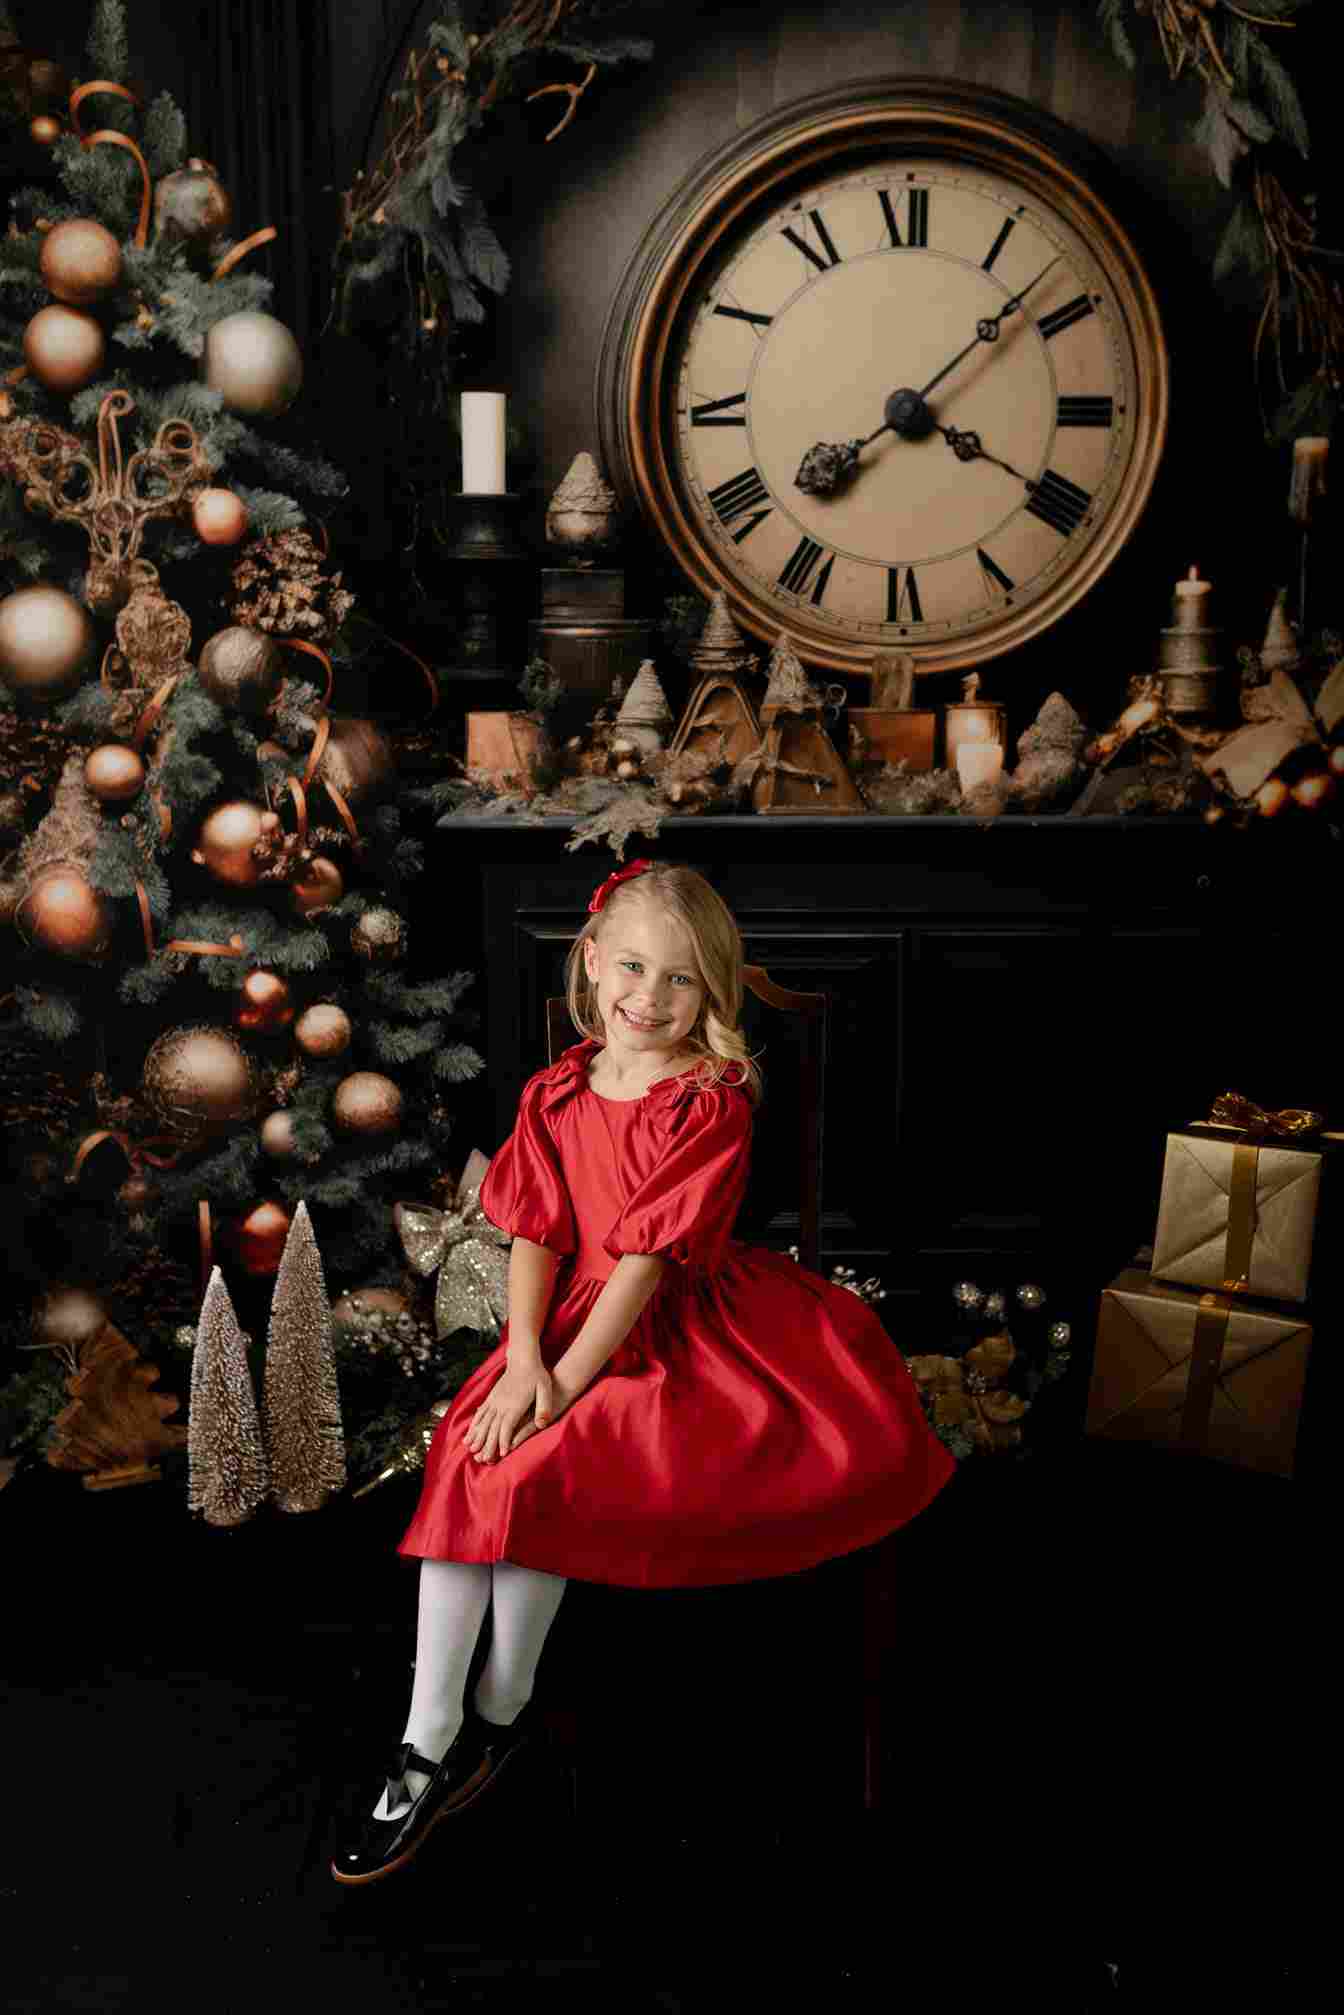 Kate Viktorianische Weihnachten-Uhr Hintergrund für Fotografie